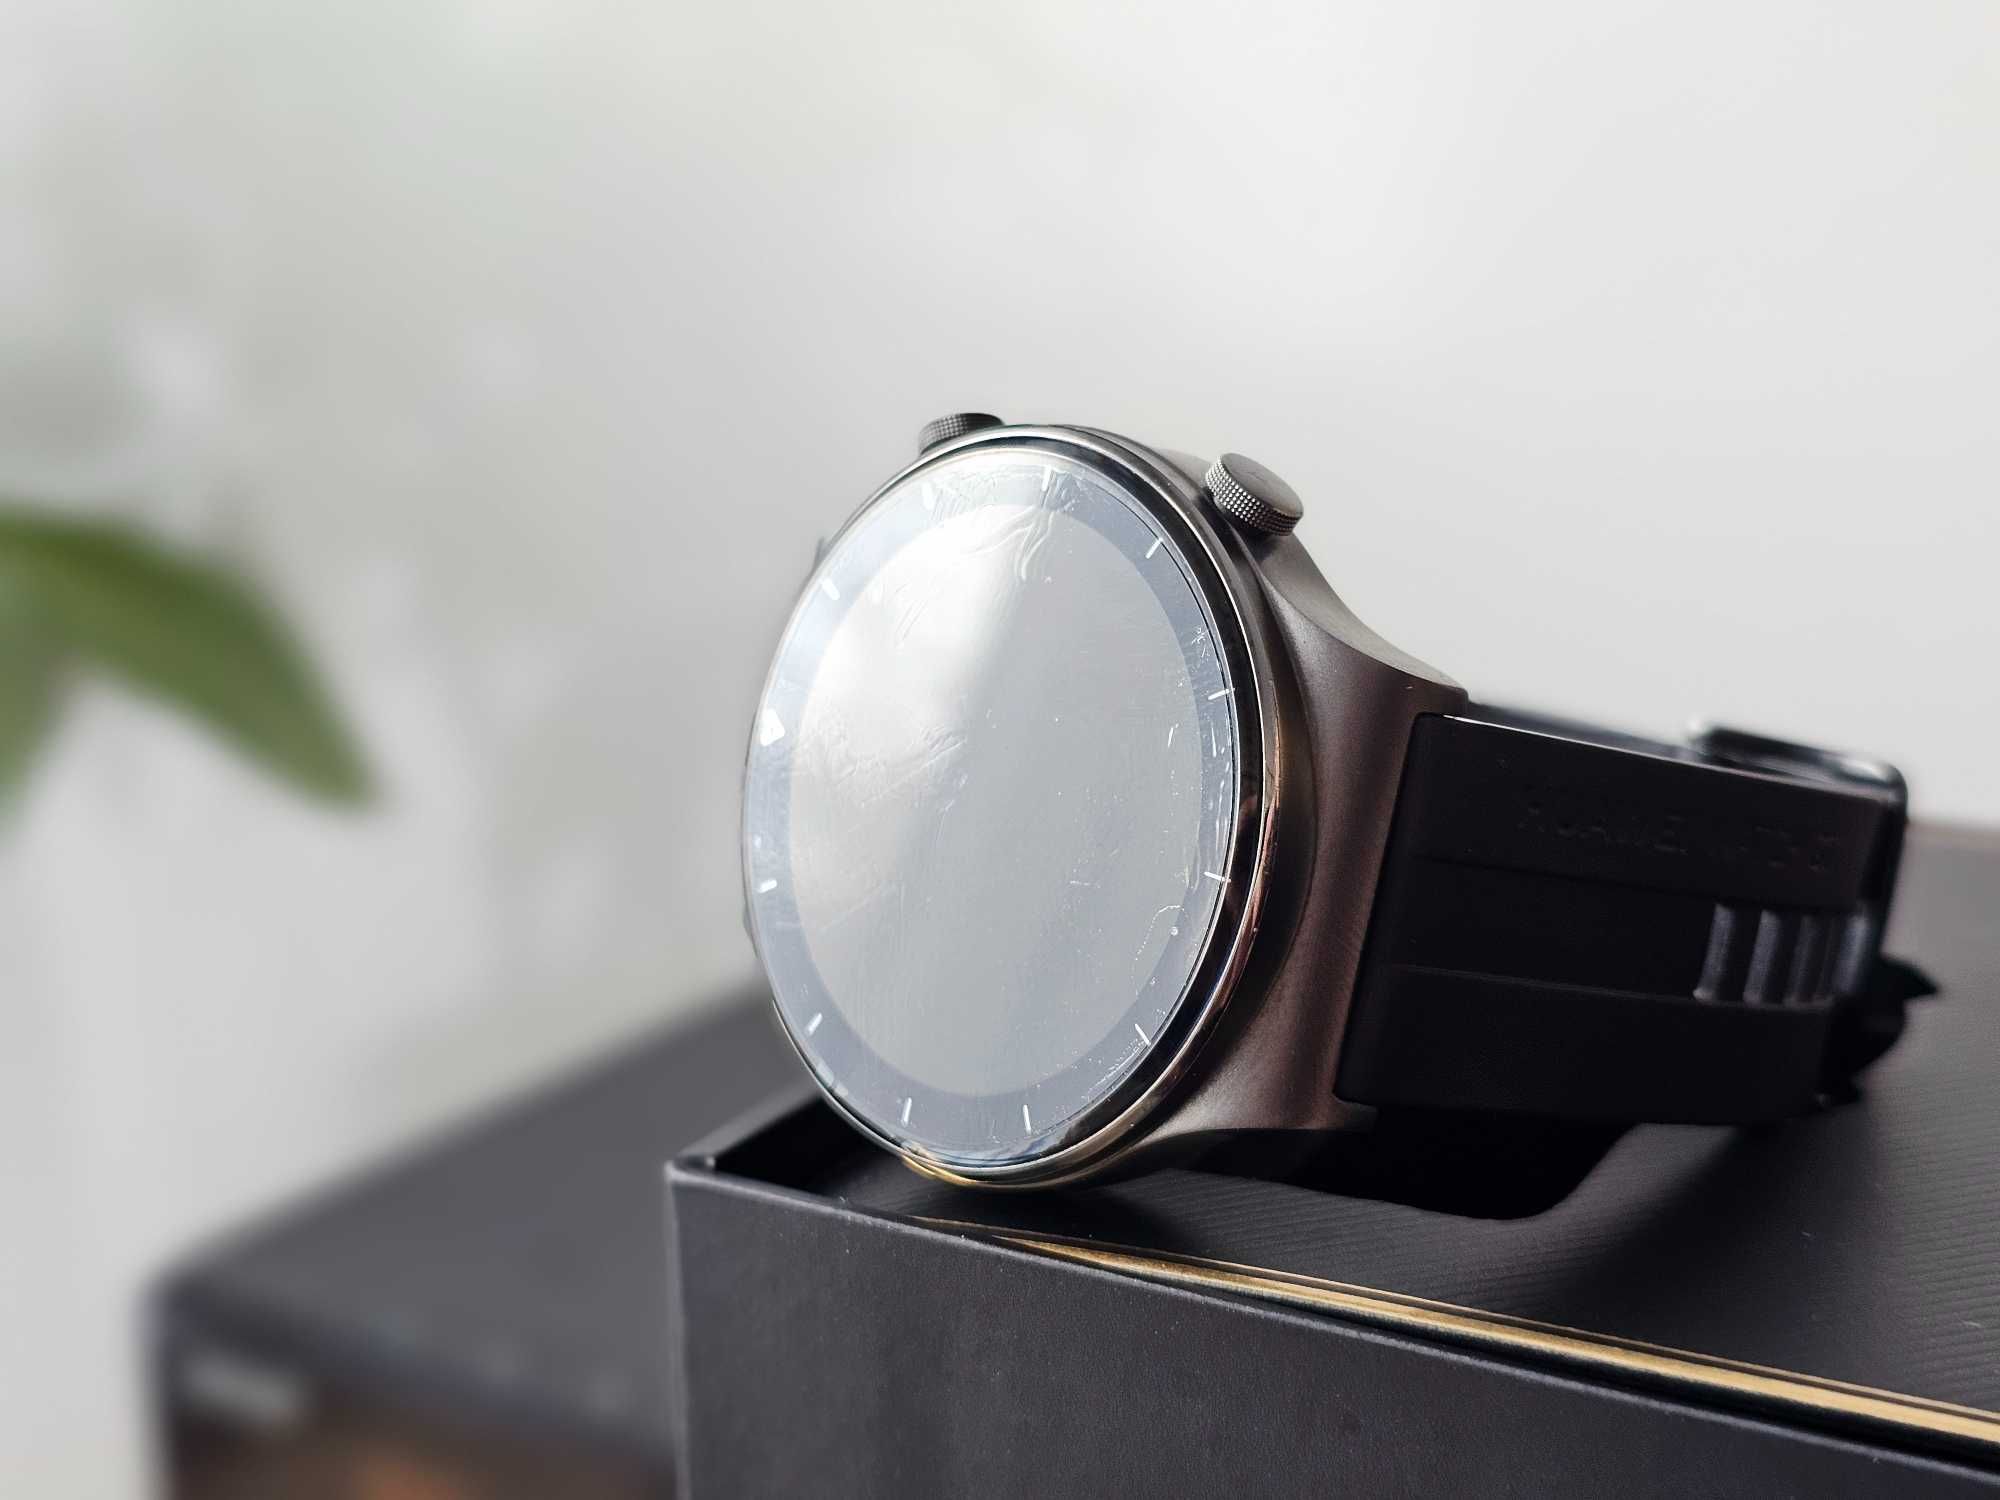 J Nowy Huawei Watch GT2 PRO sport smartwatch tytan szafir